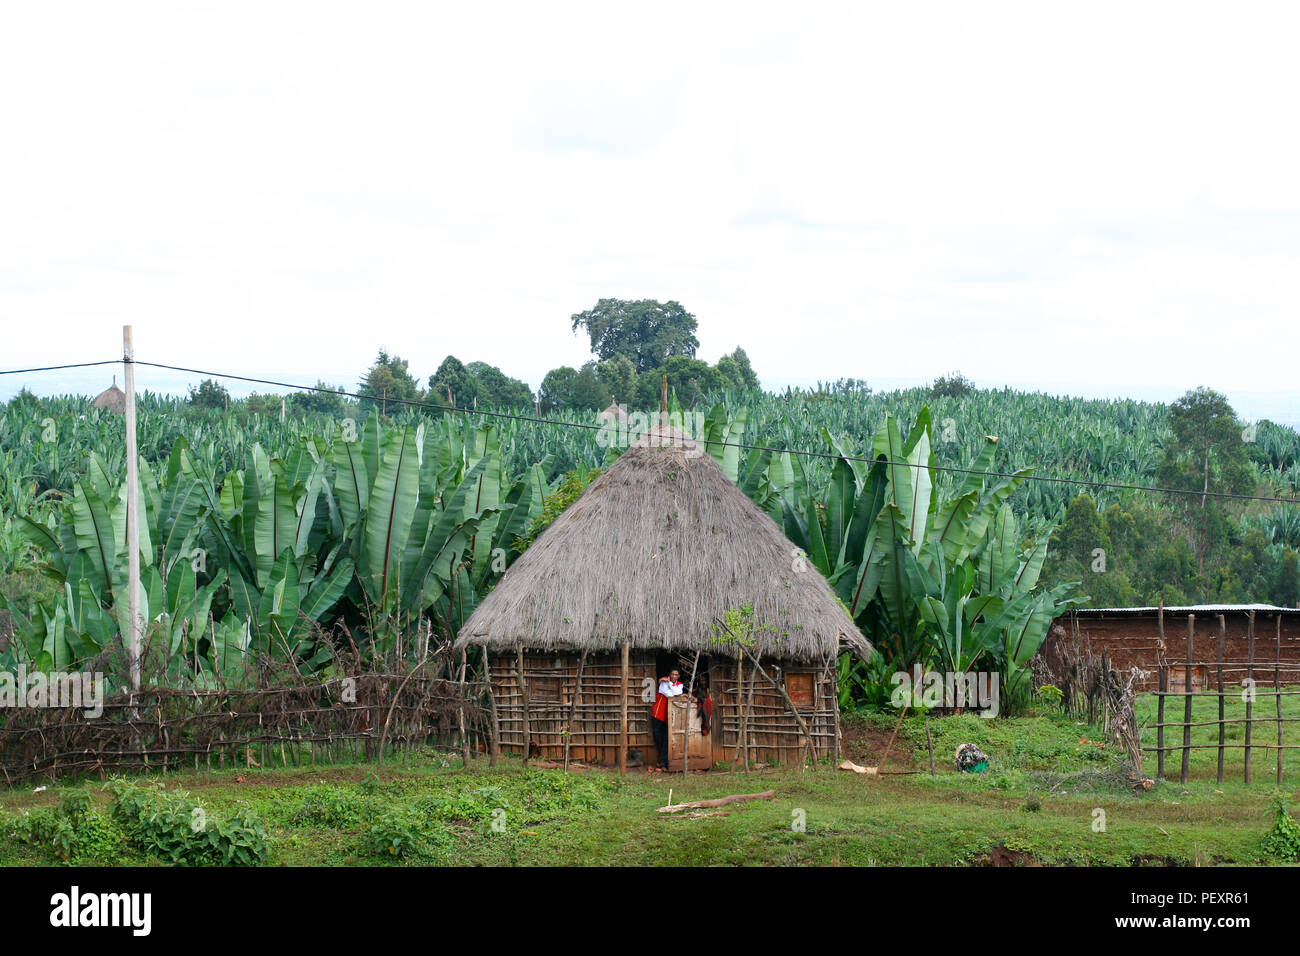 Die äthiopischen Bauern schaut aus seinem reetdach Home unter den  bananenblättern im ländlichen Äthiopien, Afrika Stockfotografie - Alamy